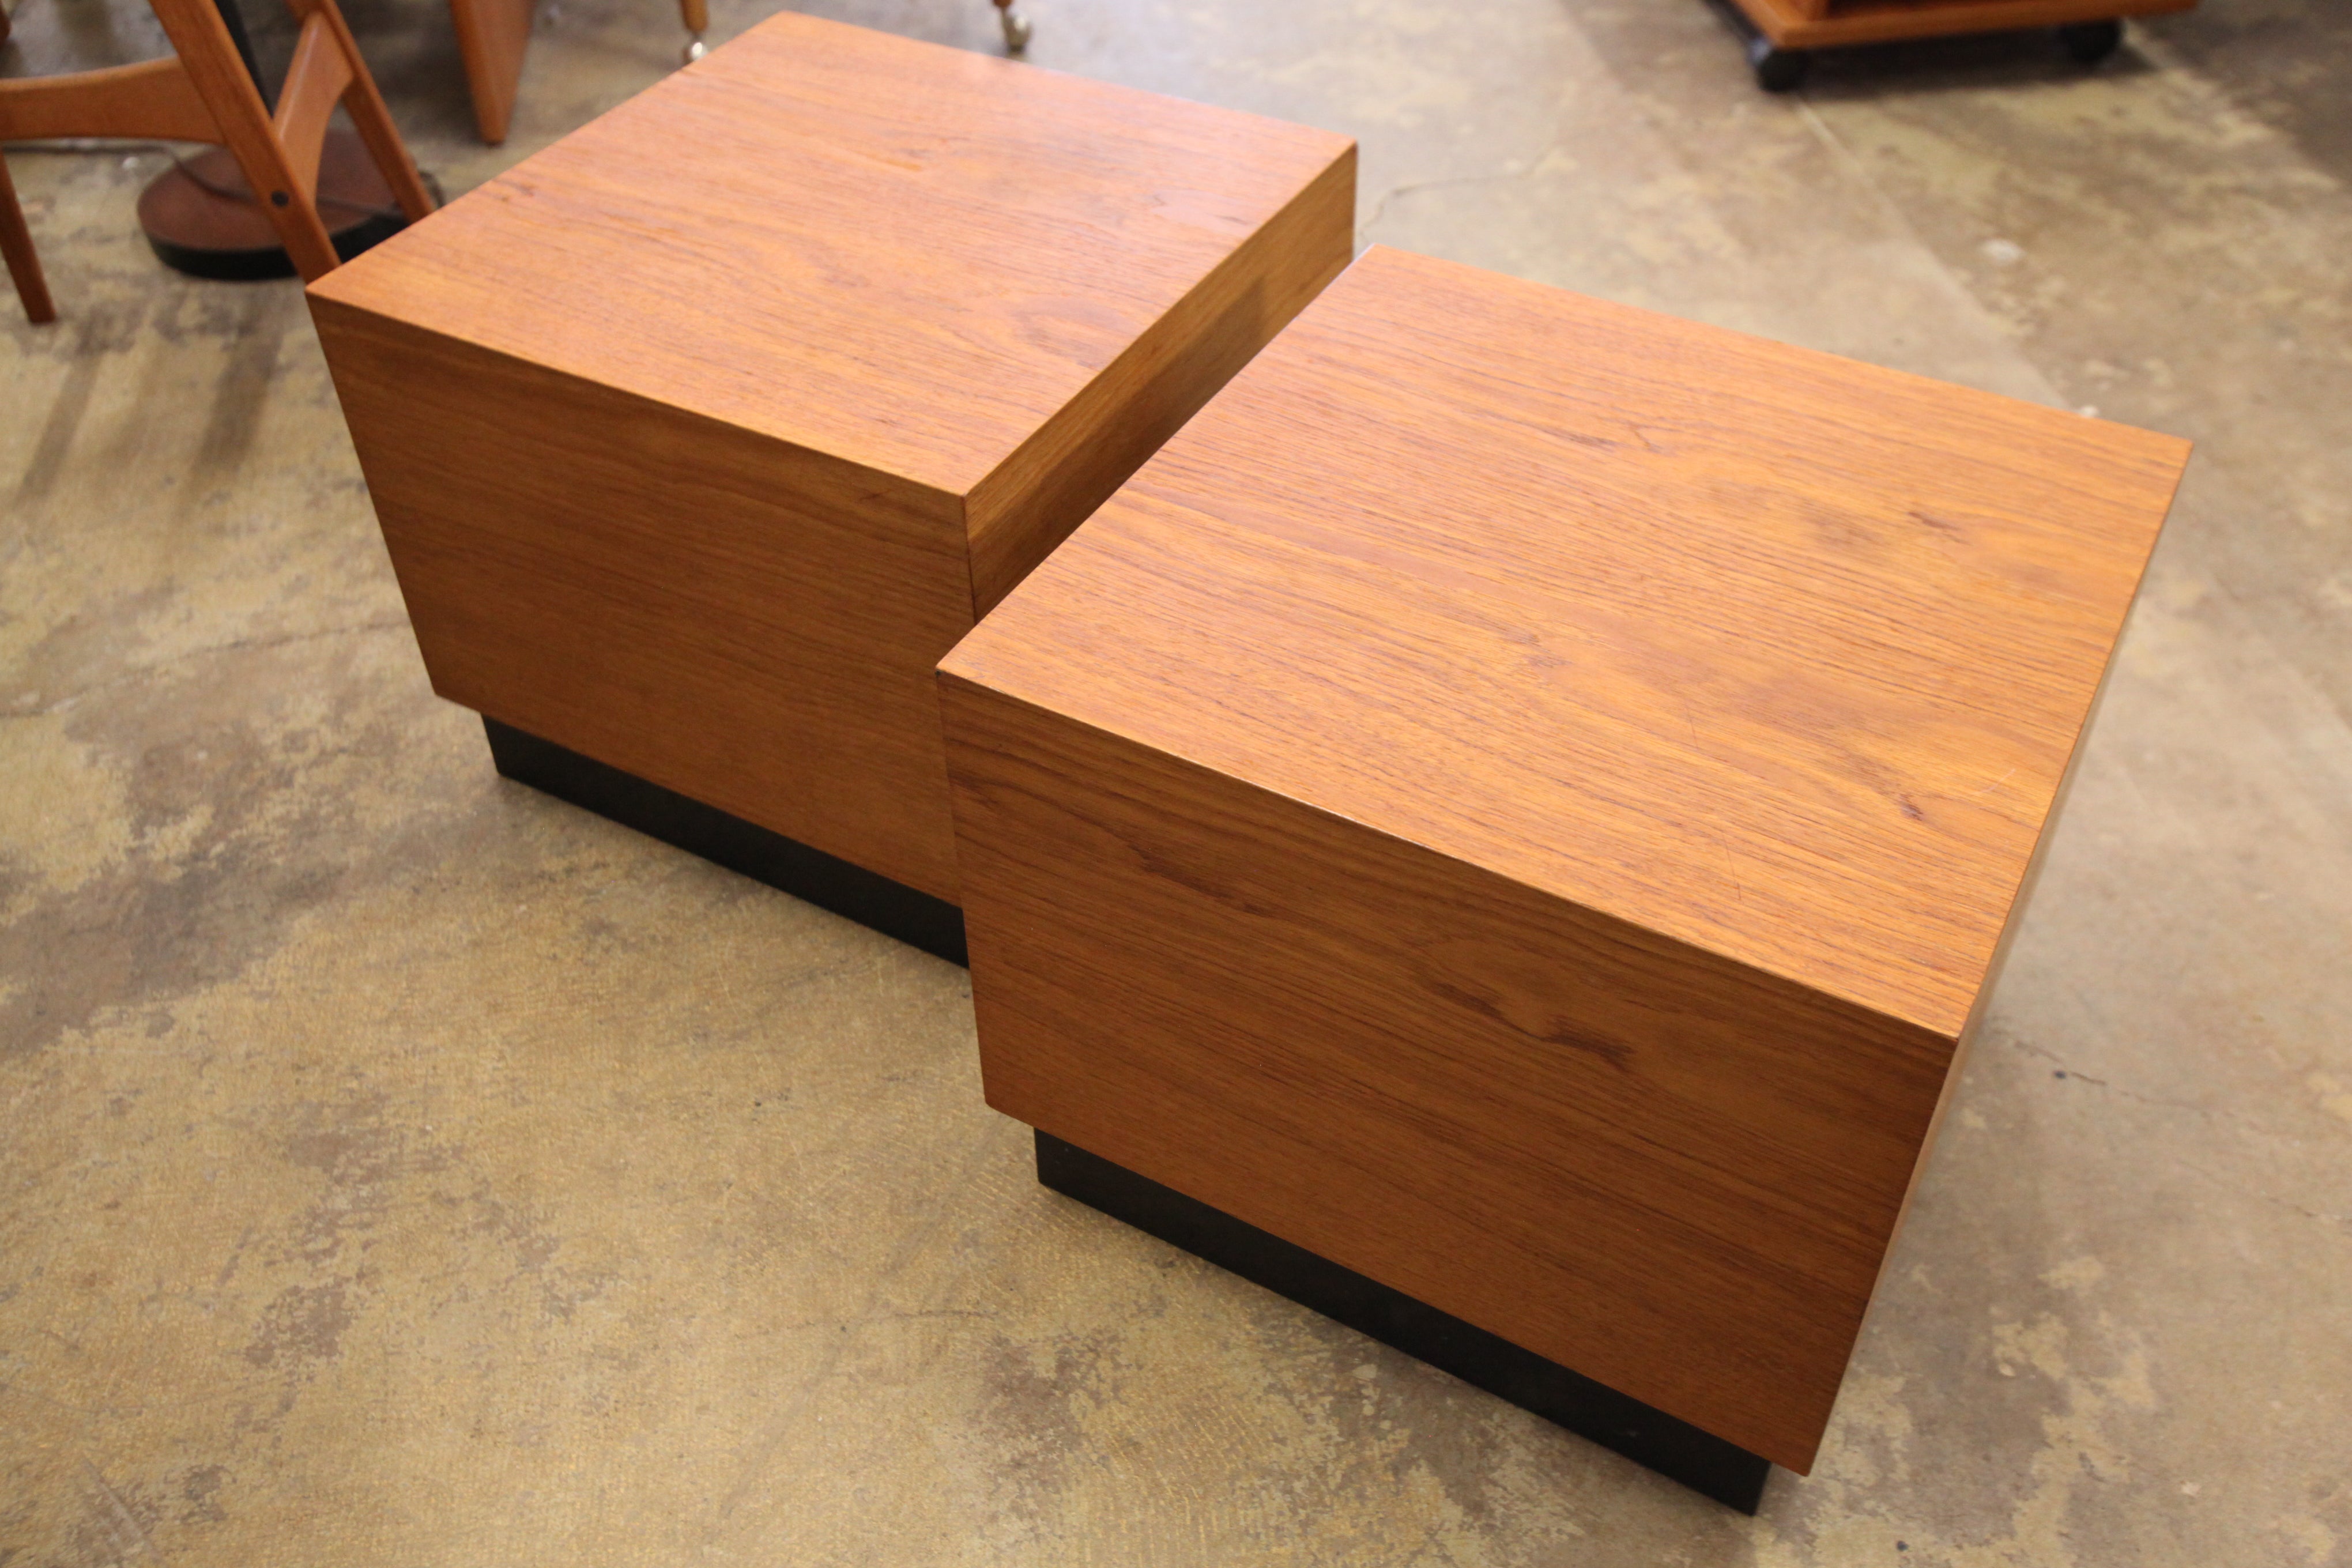 Set of 2 Vintage Teak Cube Side Tables (18" x 18" x 15"H)